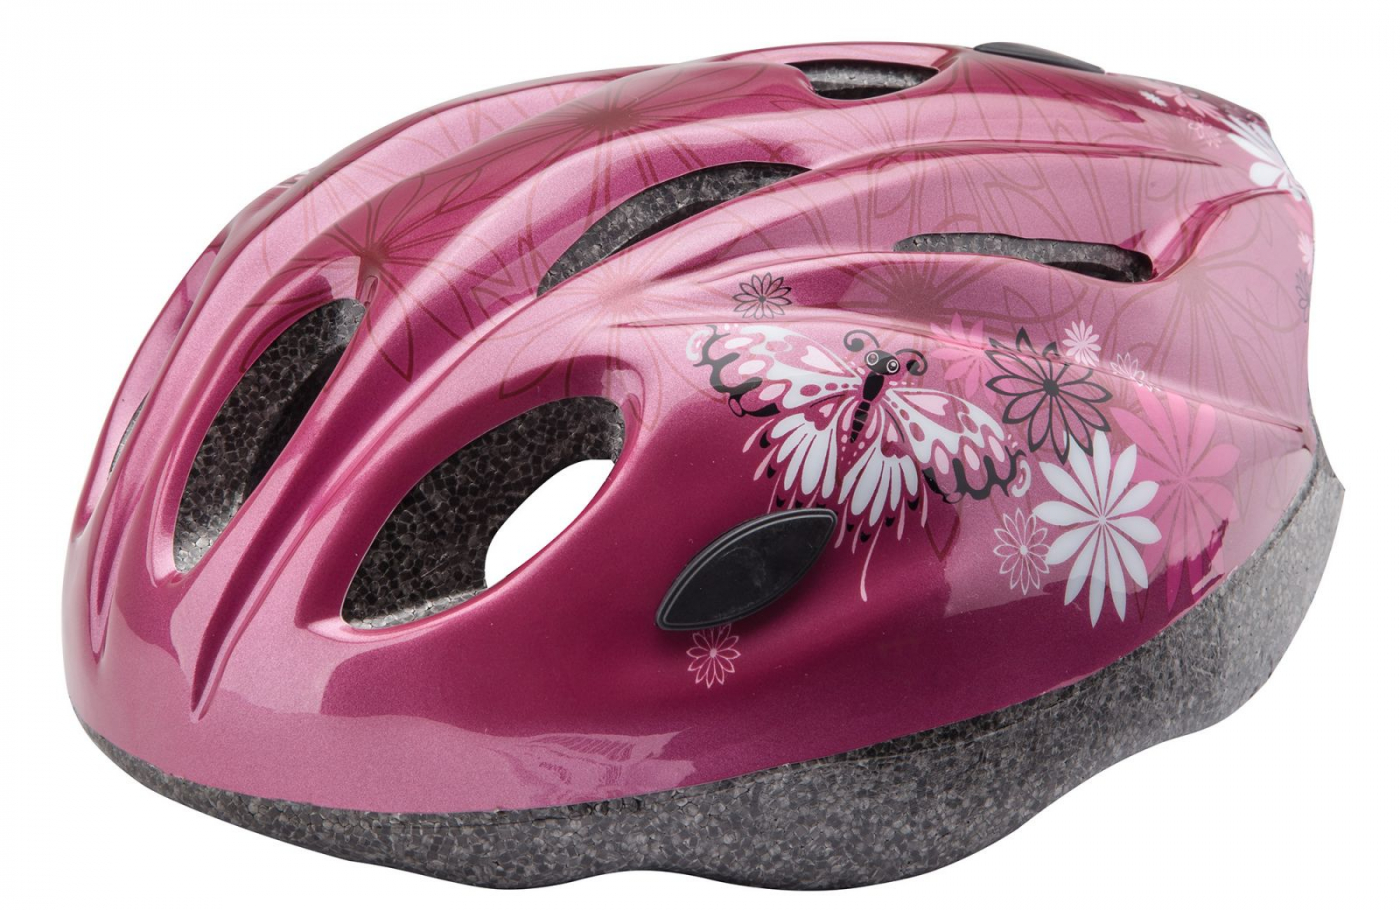 Велосипедный шлем Stels MV-11 Out-Mold, красный с цветами, S